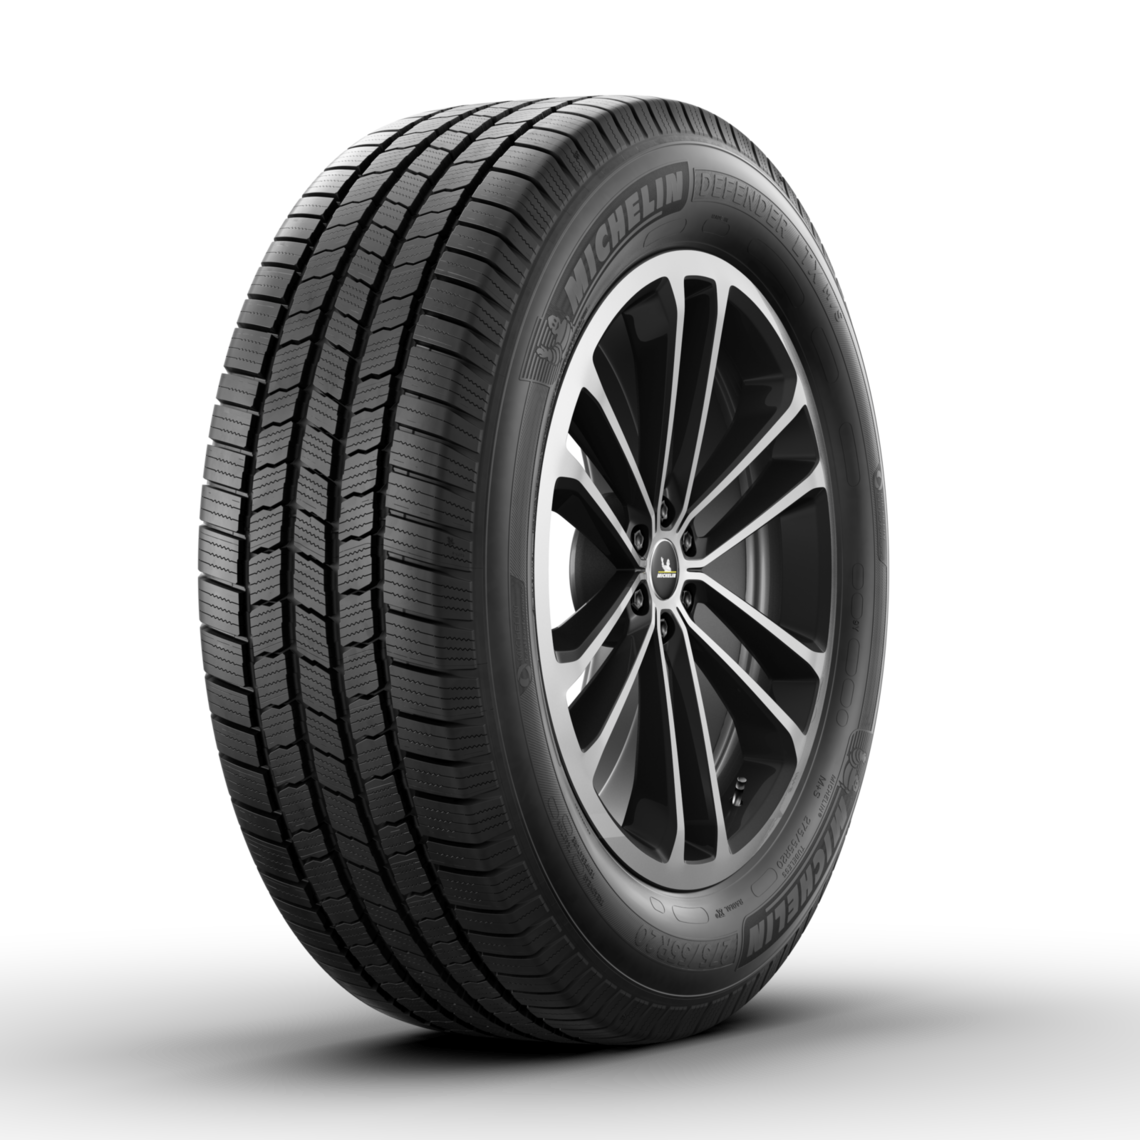 Michelin Defender M/S Tires | Michelin